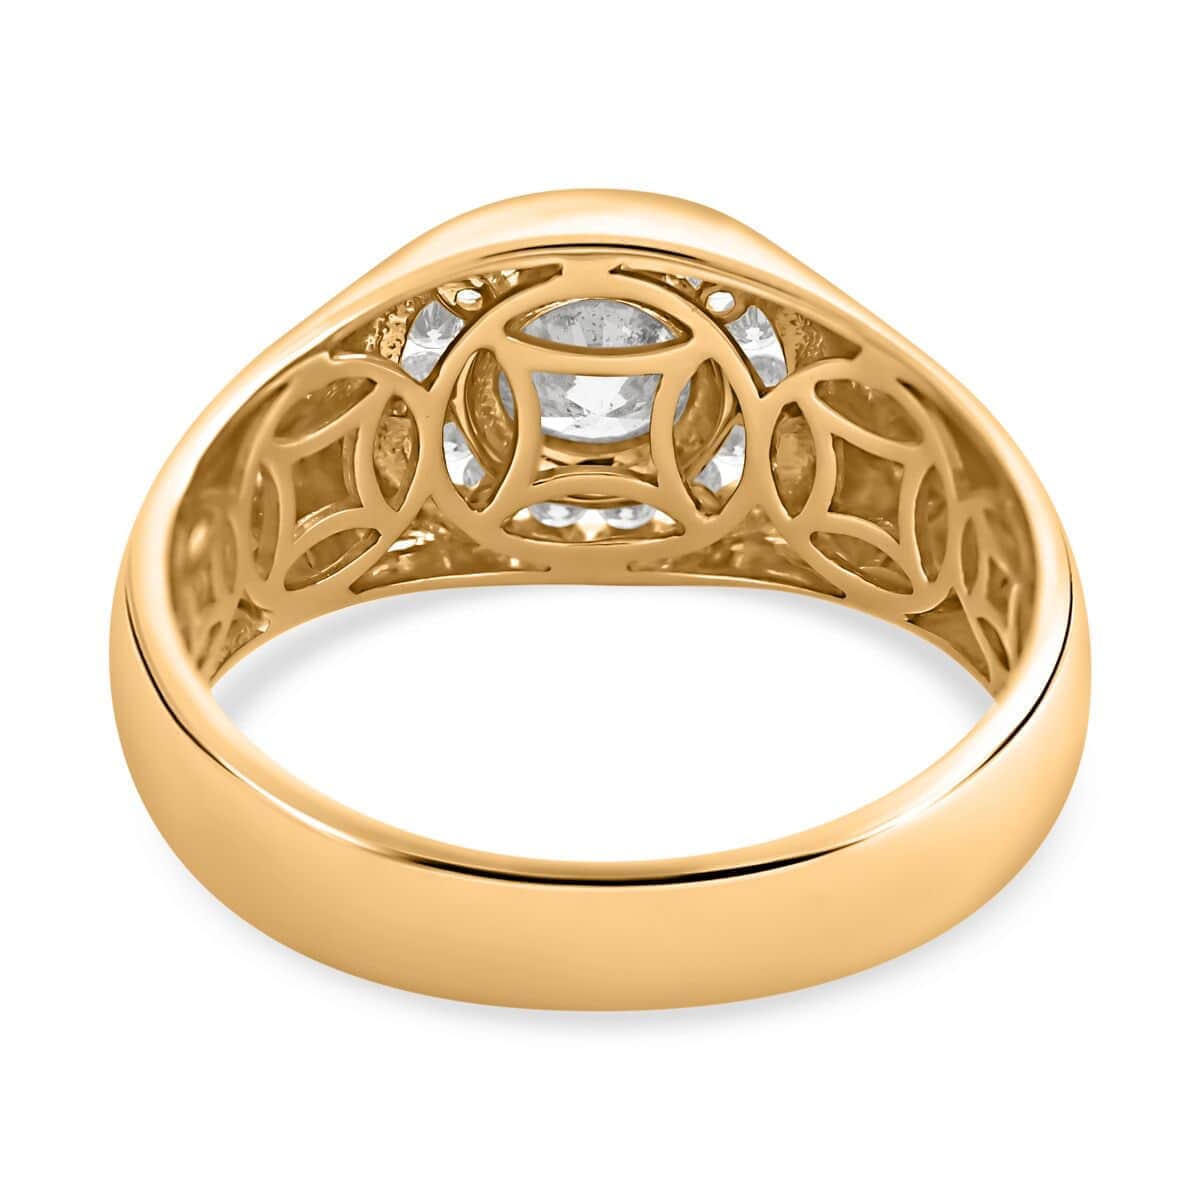 Modani 14K Yellow Gold Diamond Men's Ring (Size 10.0) 6.70 Grams 1.10 ctw image number 4